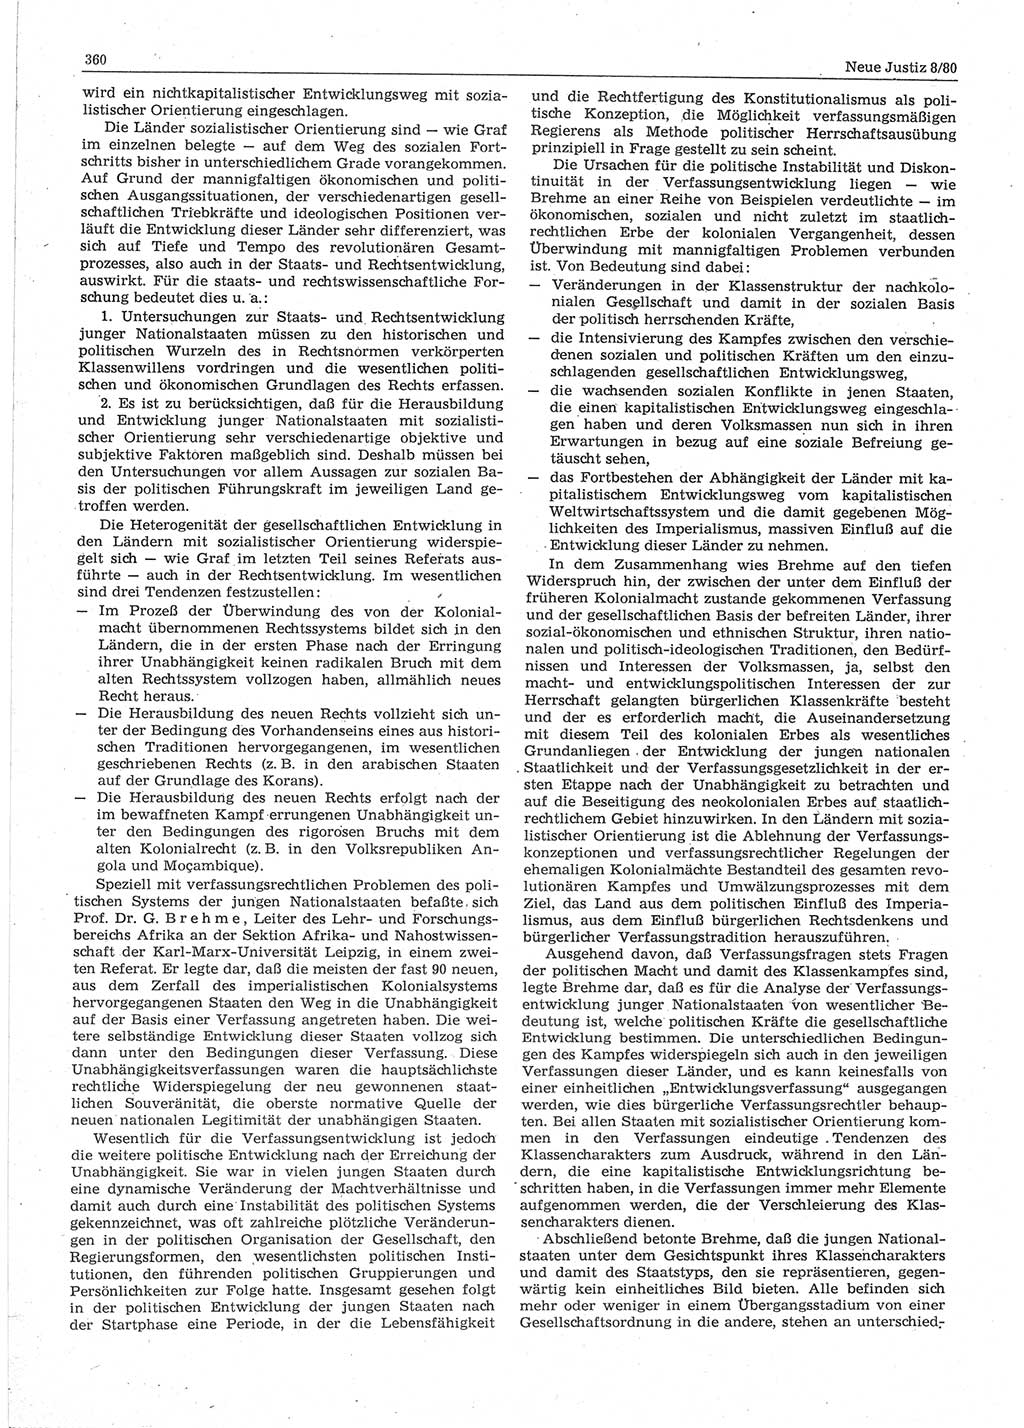 Neue Justiz (NJ), Zeitschrift für sozialistisches Recht und Gesetzlichkeit [Deutsche Demokratische Republik (DDR)], 34. Jahrgang 1980, Seite 360 (NJ DDR 1980, S. 360)